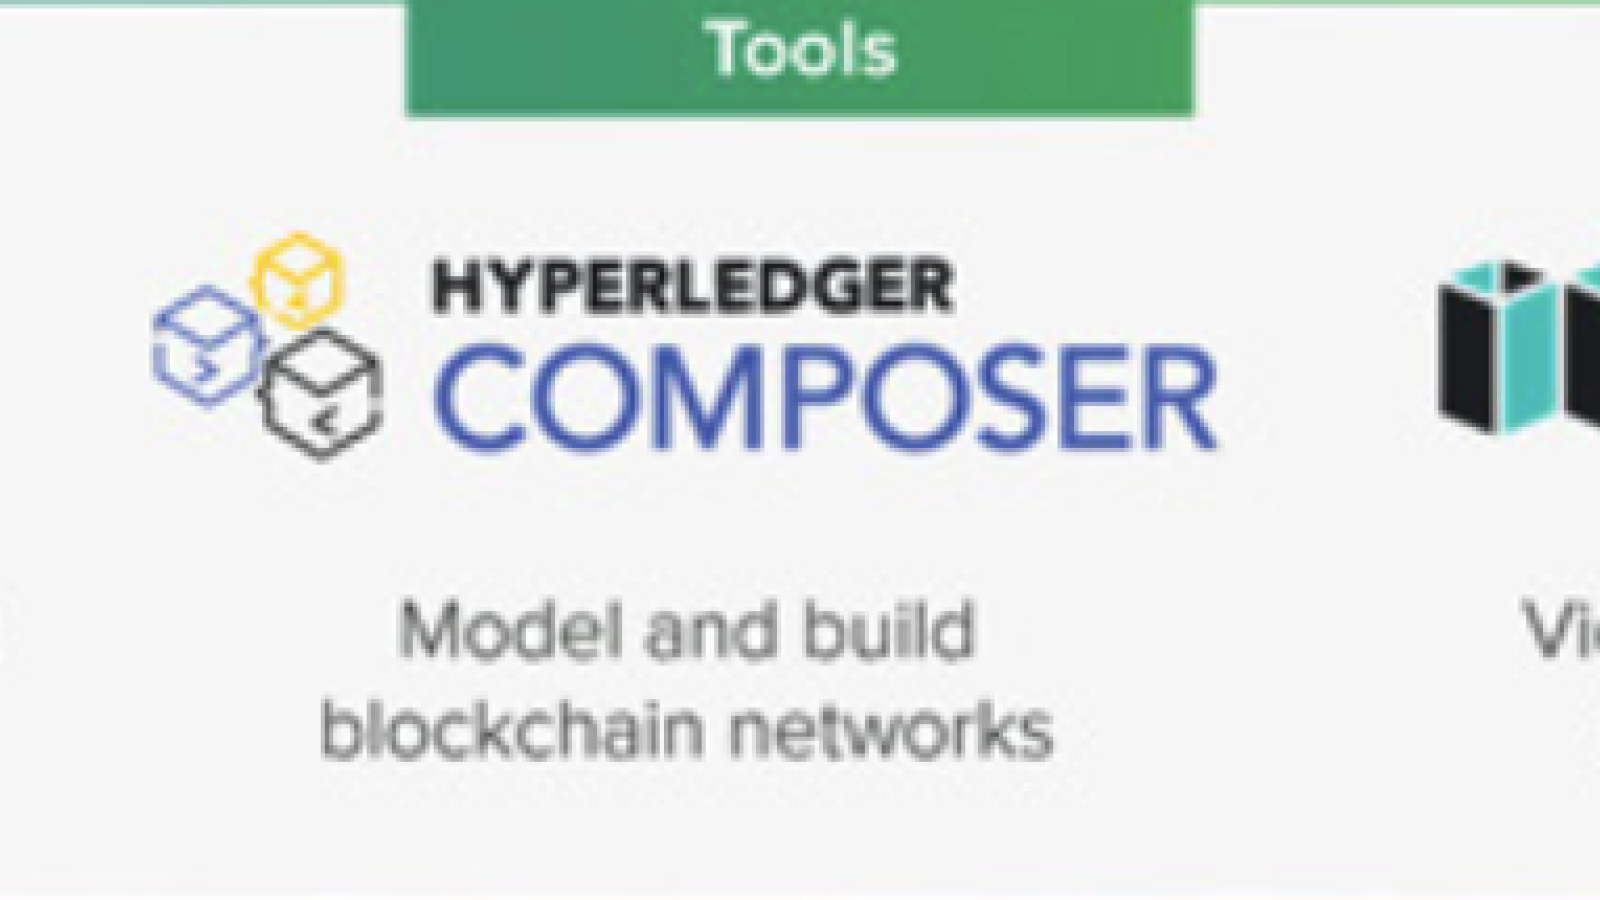 Hyperledger tools